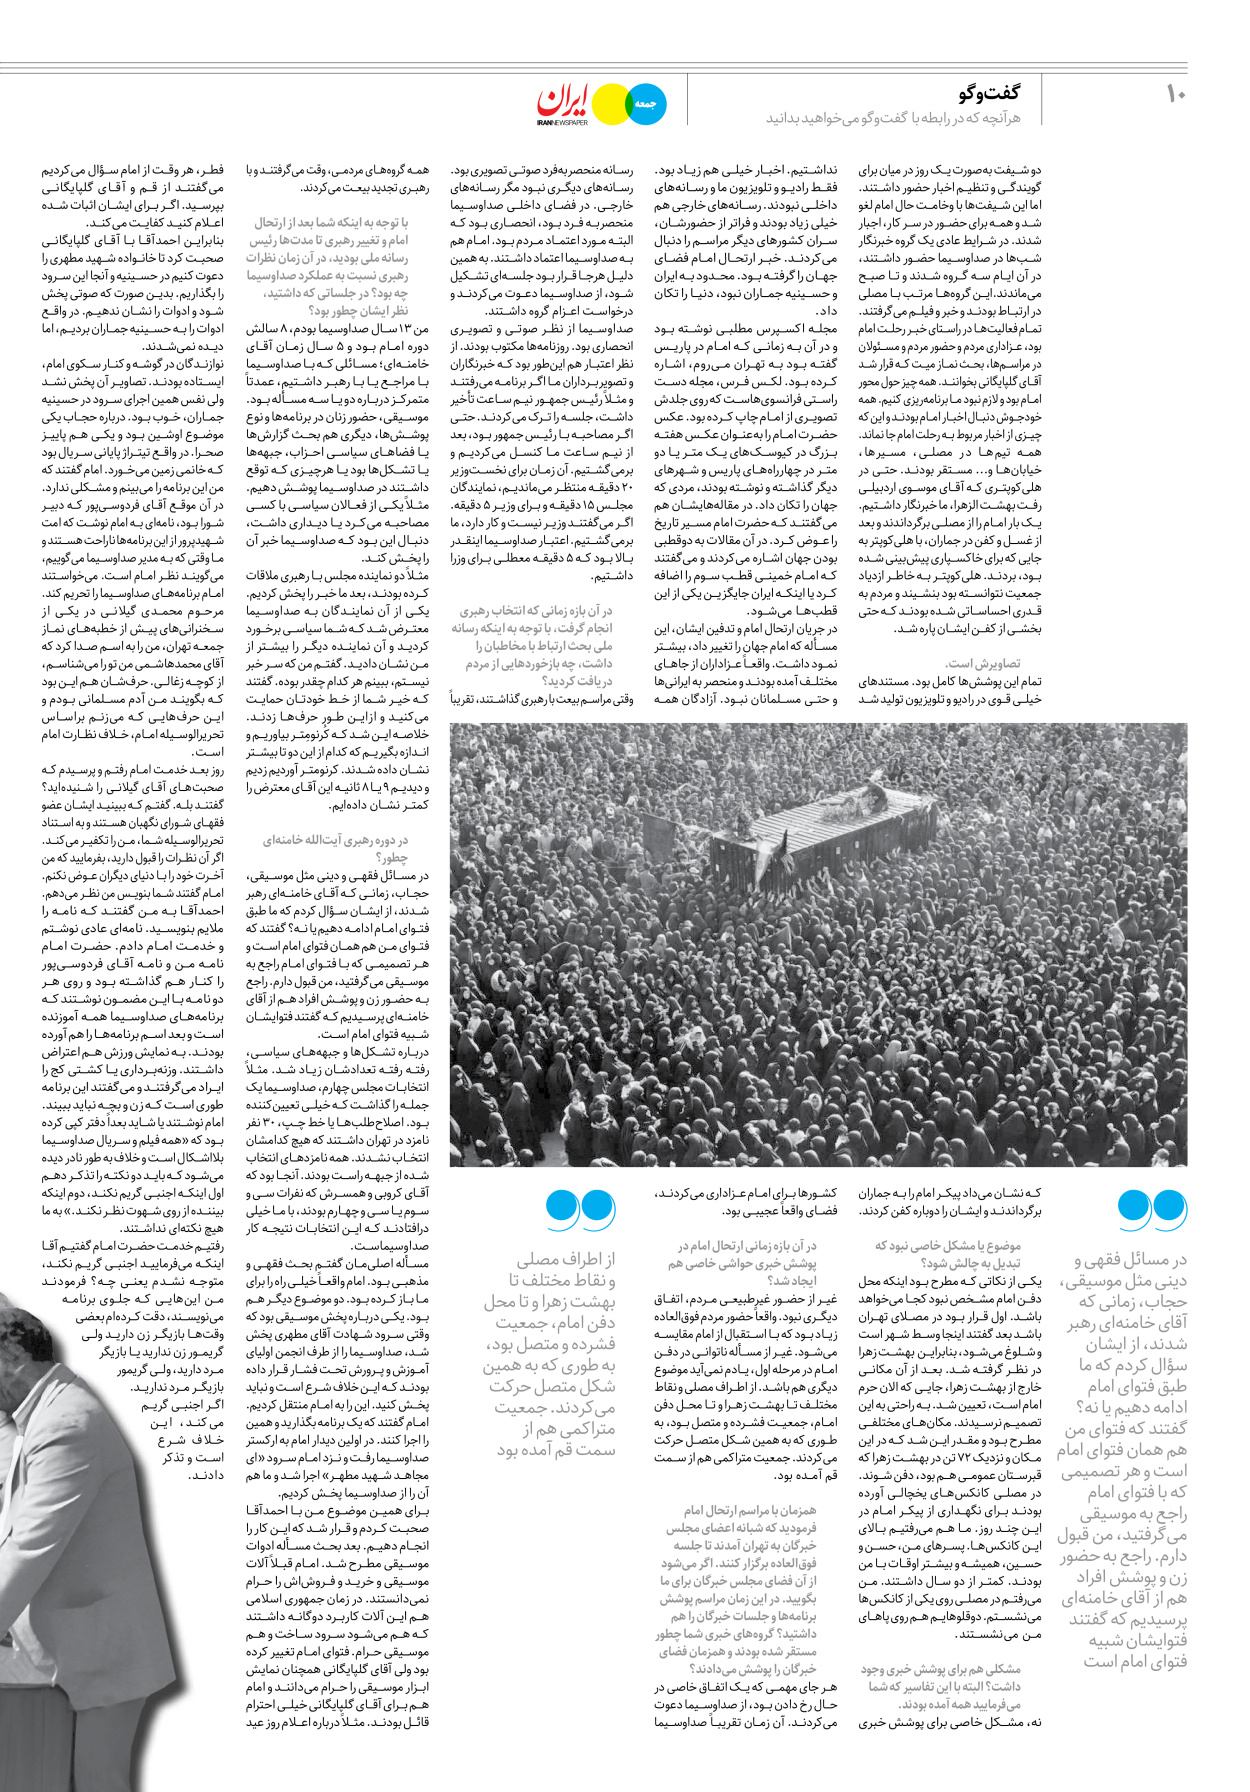 روزنامه ایران - ویژه نامه جمعه۳۰ - ۱۱ خرداد ۱۴۰۲ - صفحه ۱۰